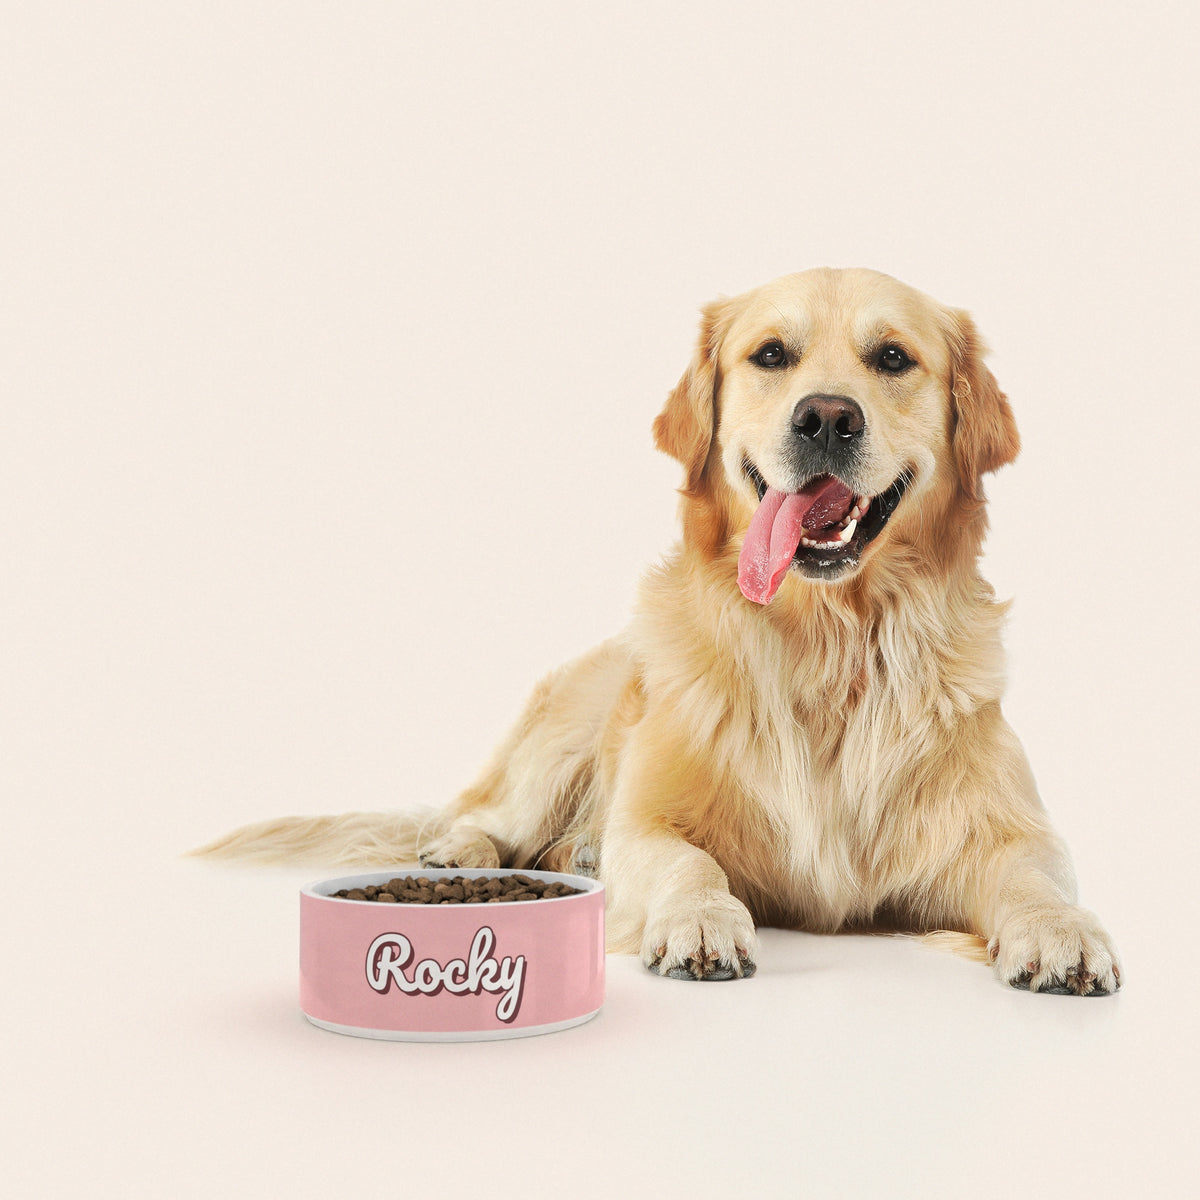 Un golden retriever assis à côté d'un bol pour chien au motif Rose Pastel personnalisé avec le nom ROCKY